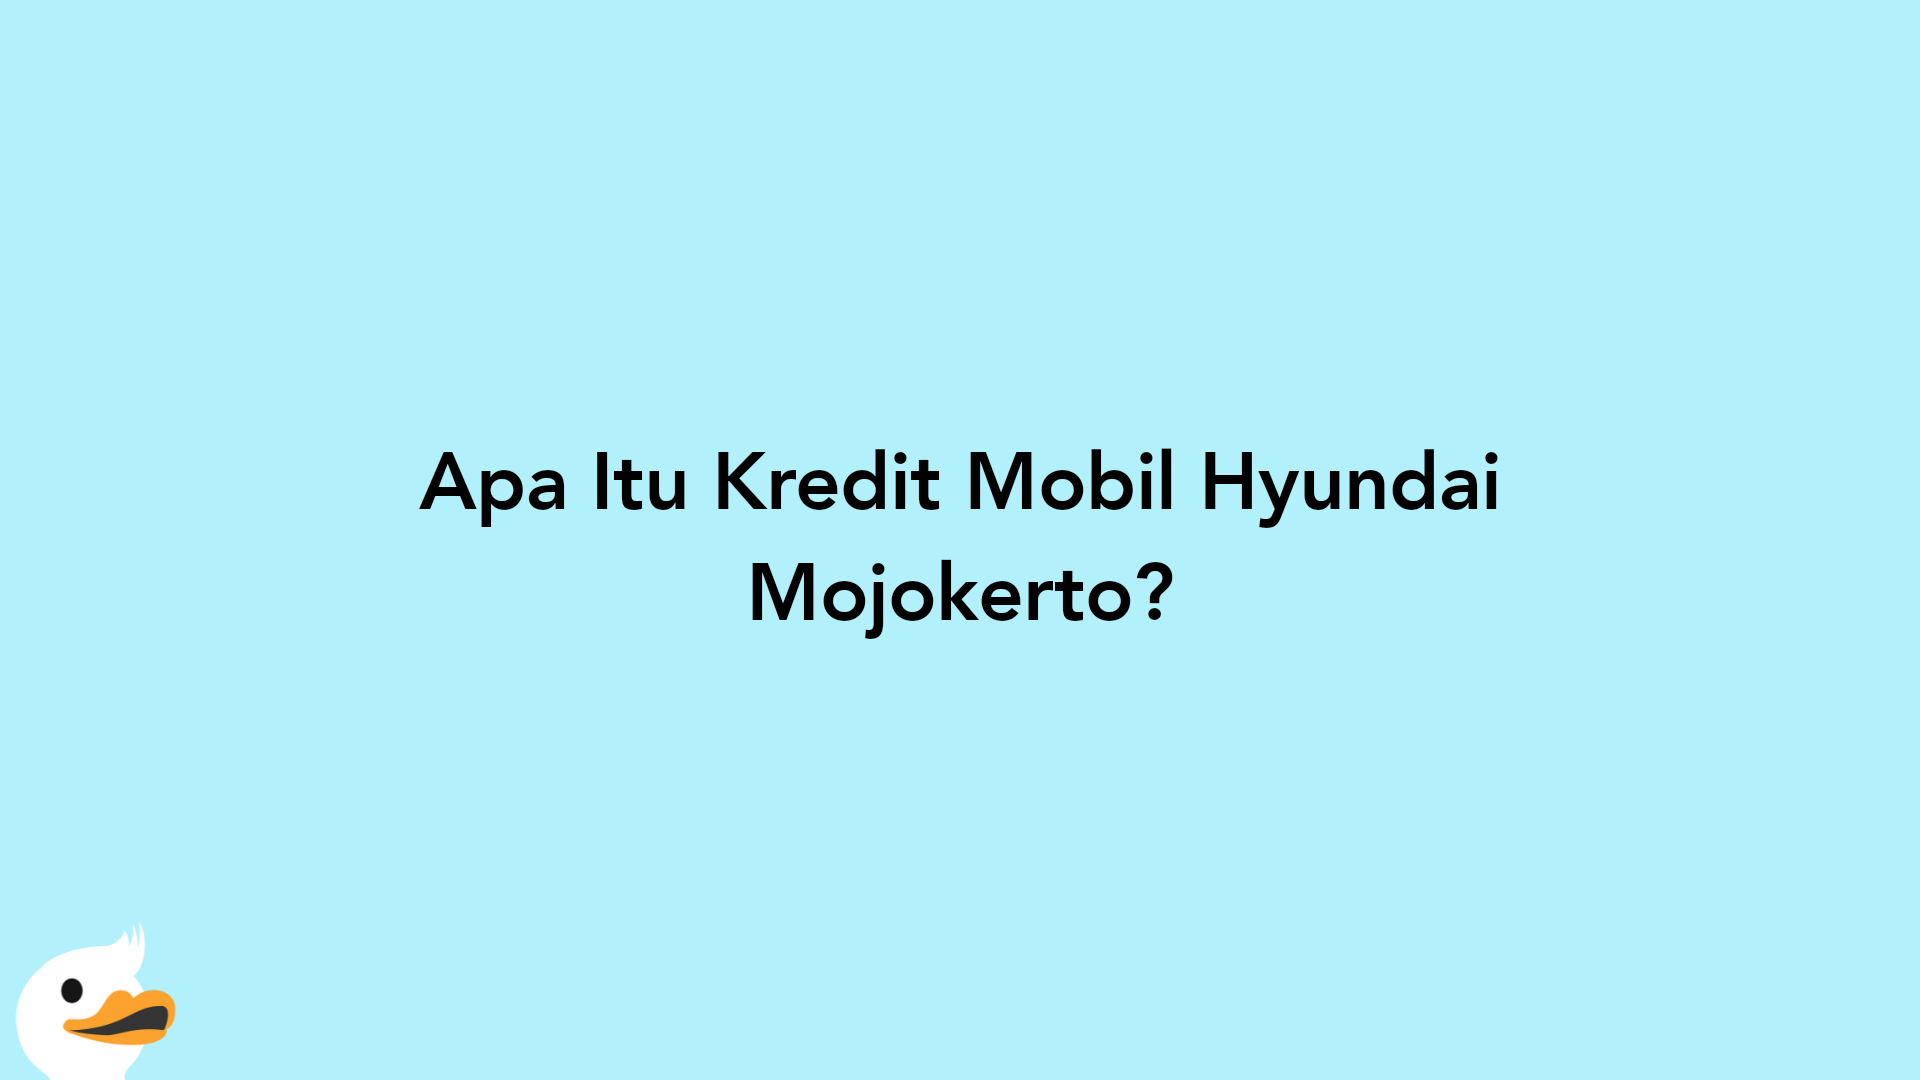 Apa Itu Kredit Mobil Hyundai Mojokerto?